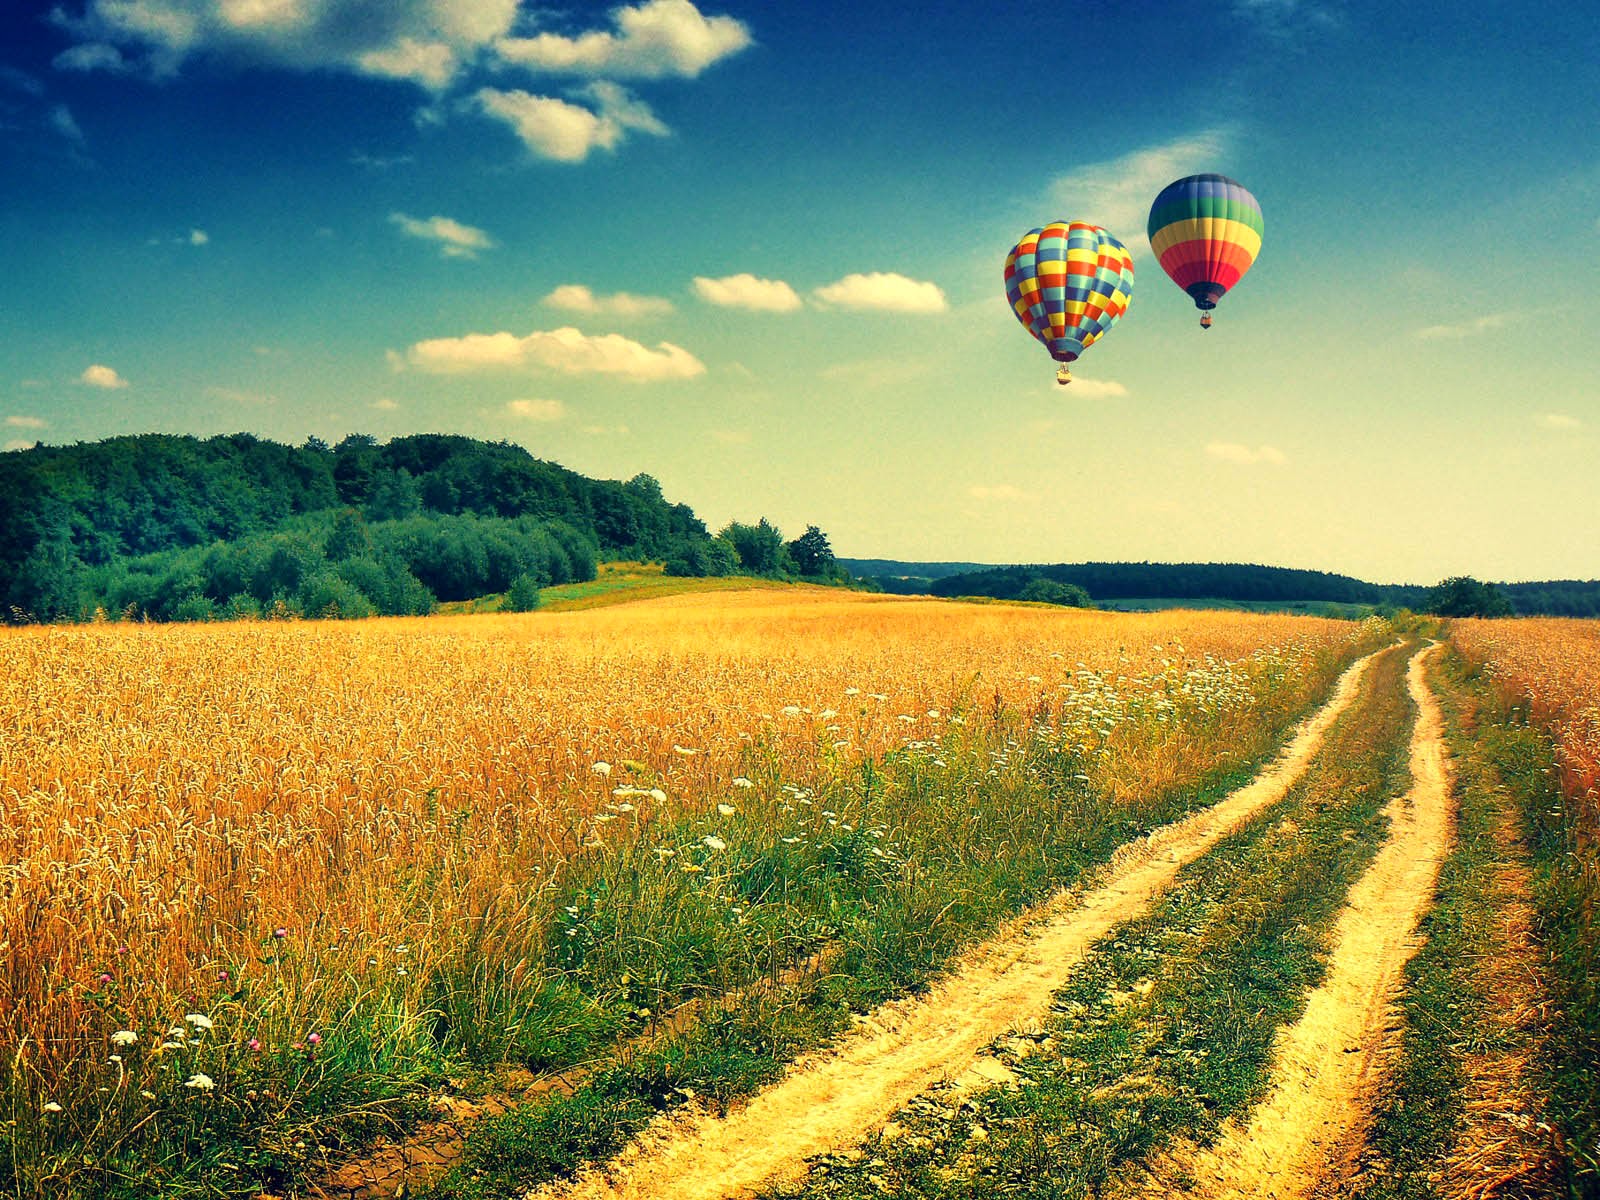 Gambar Gambar Balon Udara Yang Cantik - Hot Air Balloon Background - HD Wallpaper 